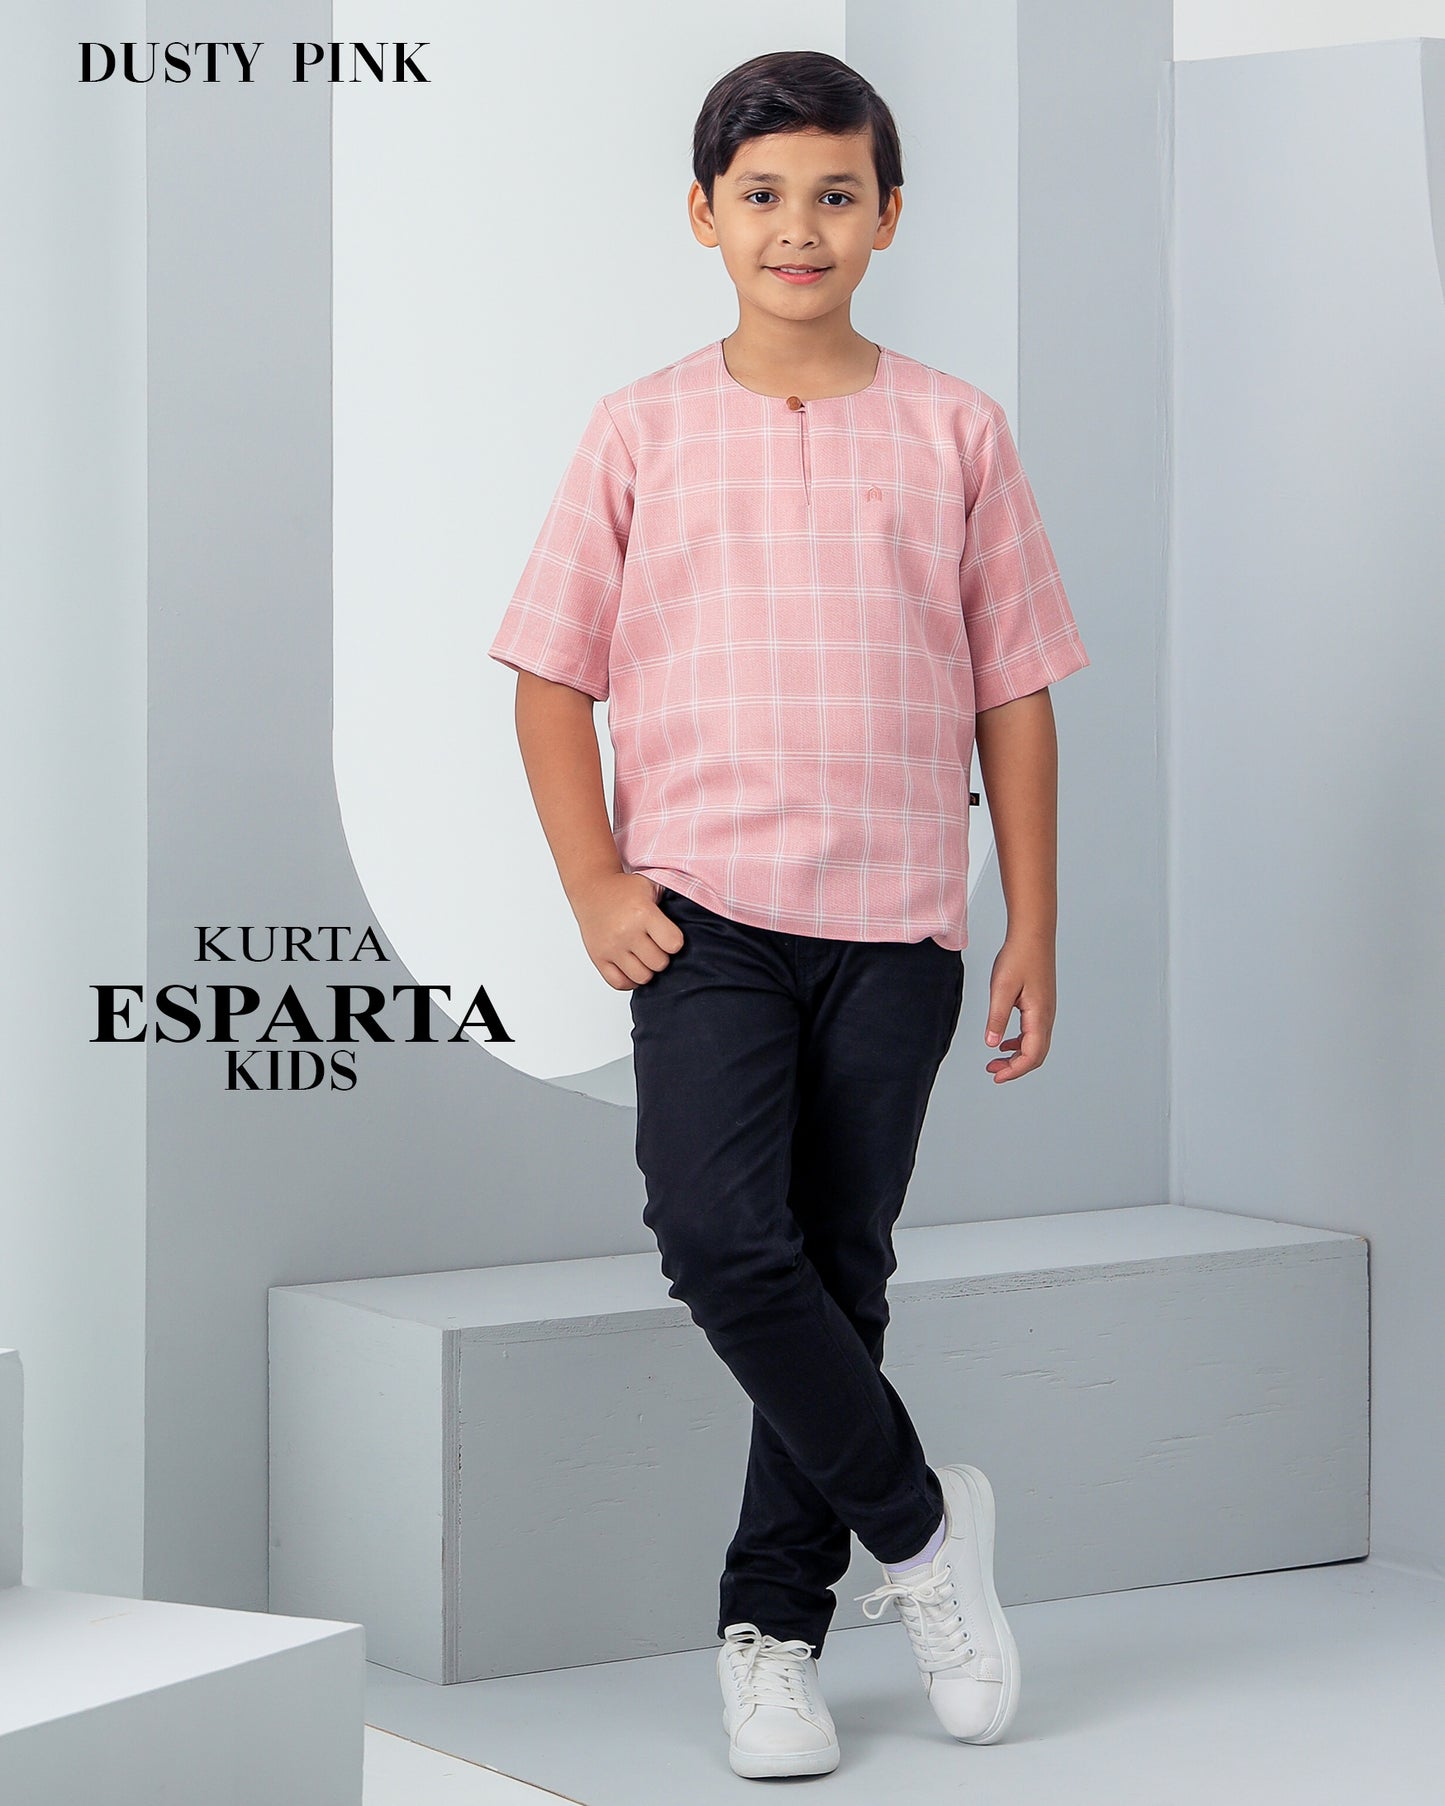 Kurta Esparta Kids - Dusty Pink